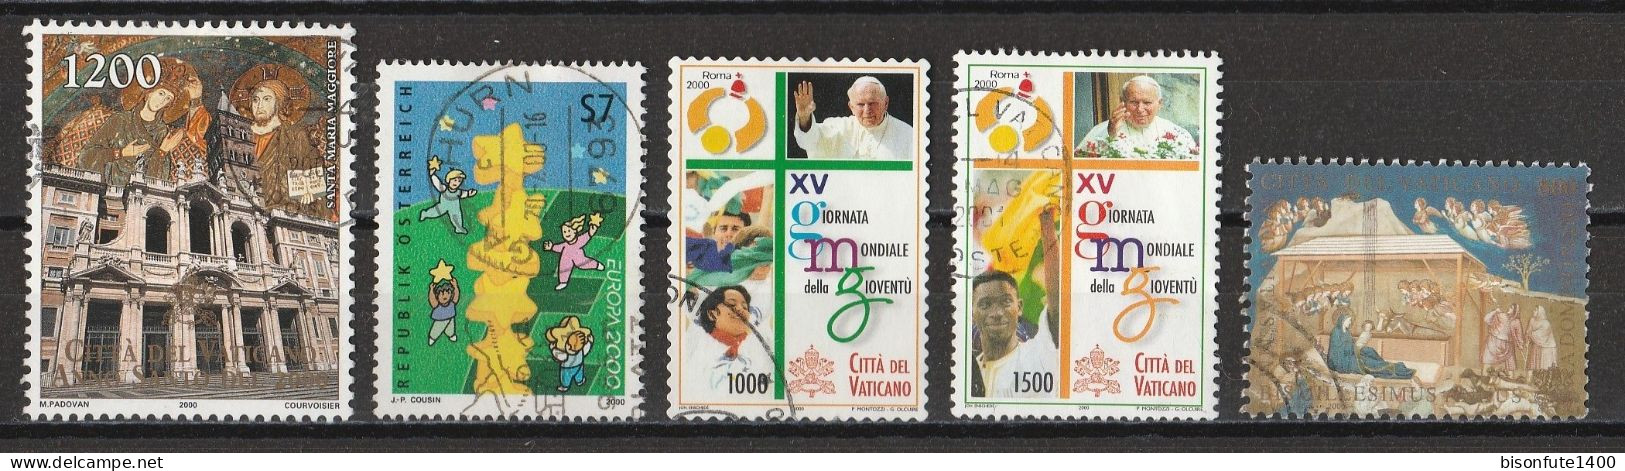 Vatican 2000 : Timbres Yvert & Tellier N° 1183 - 1196 - 1199 - 1201 - 1209 - 1210 - 1211 - 1212 Et 1216 Oblitérés - Oblitérés